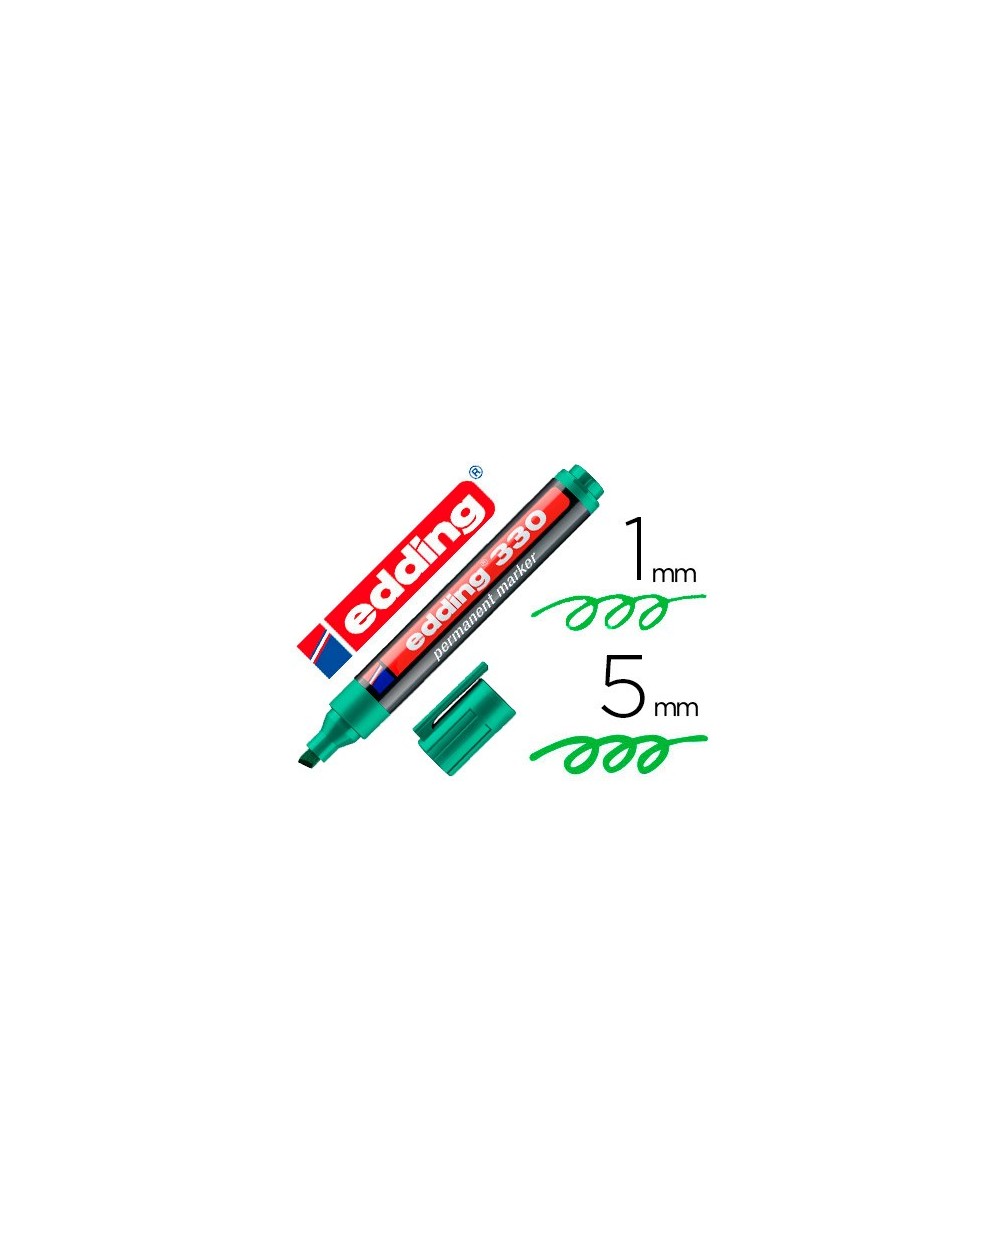 Rotulador edding marcador permanente 330 verde punta biselada 1 5 mm recargable